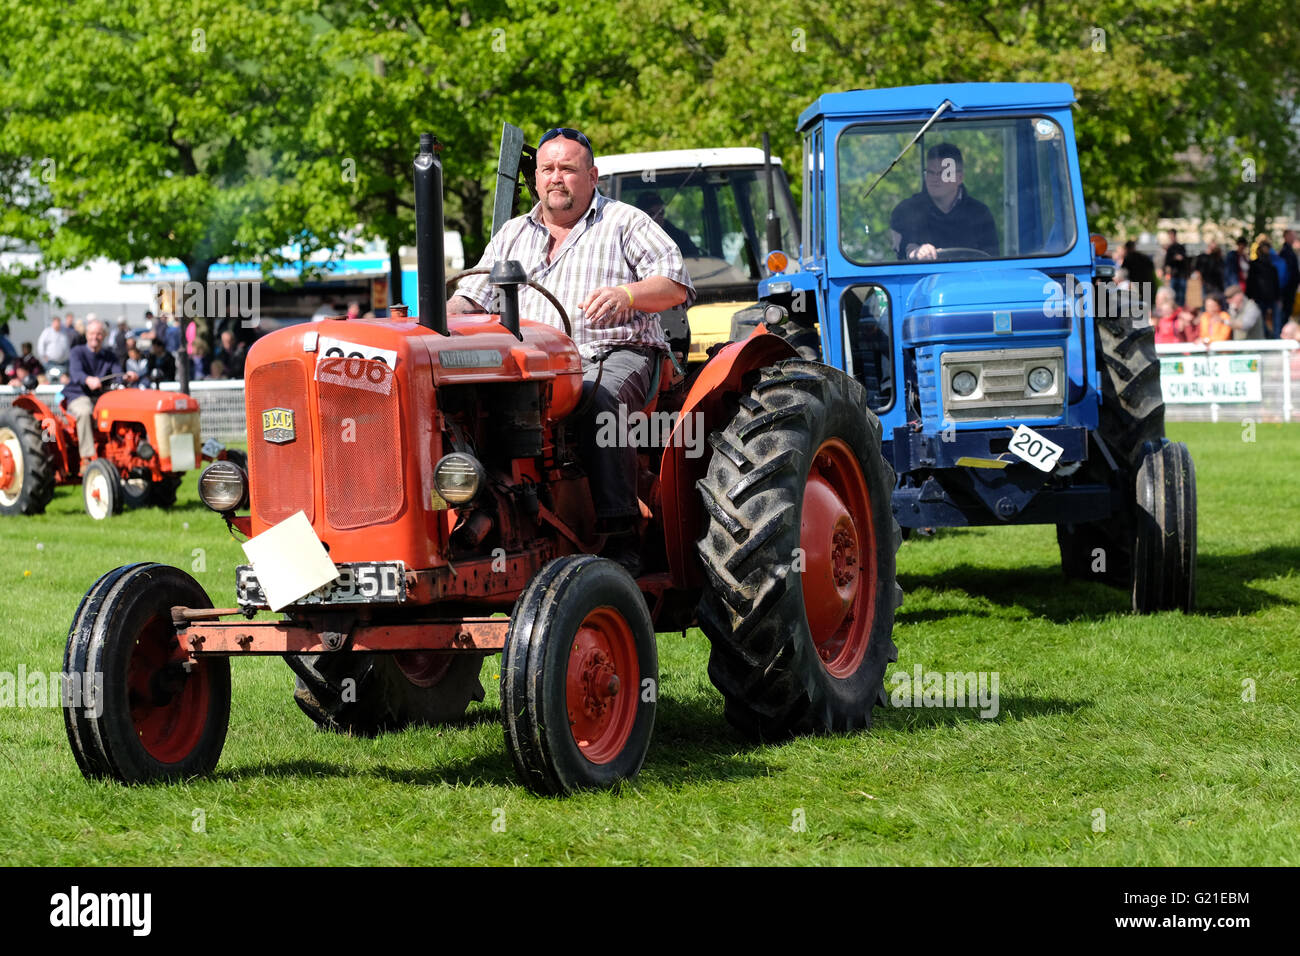 Royal Welsh Festival du printemps, mai 2016 - L'exposition comportait un défilé de voitures anciennes et vintage - illustré ici est un tracteur Nuffield 10/42 produits dans les années 60. Banque D'Images